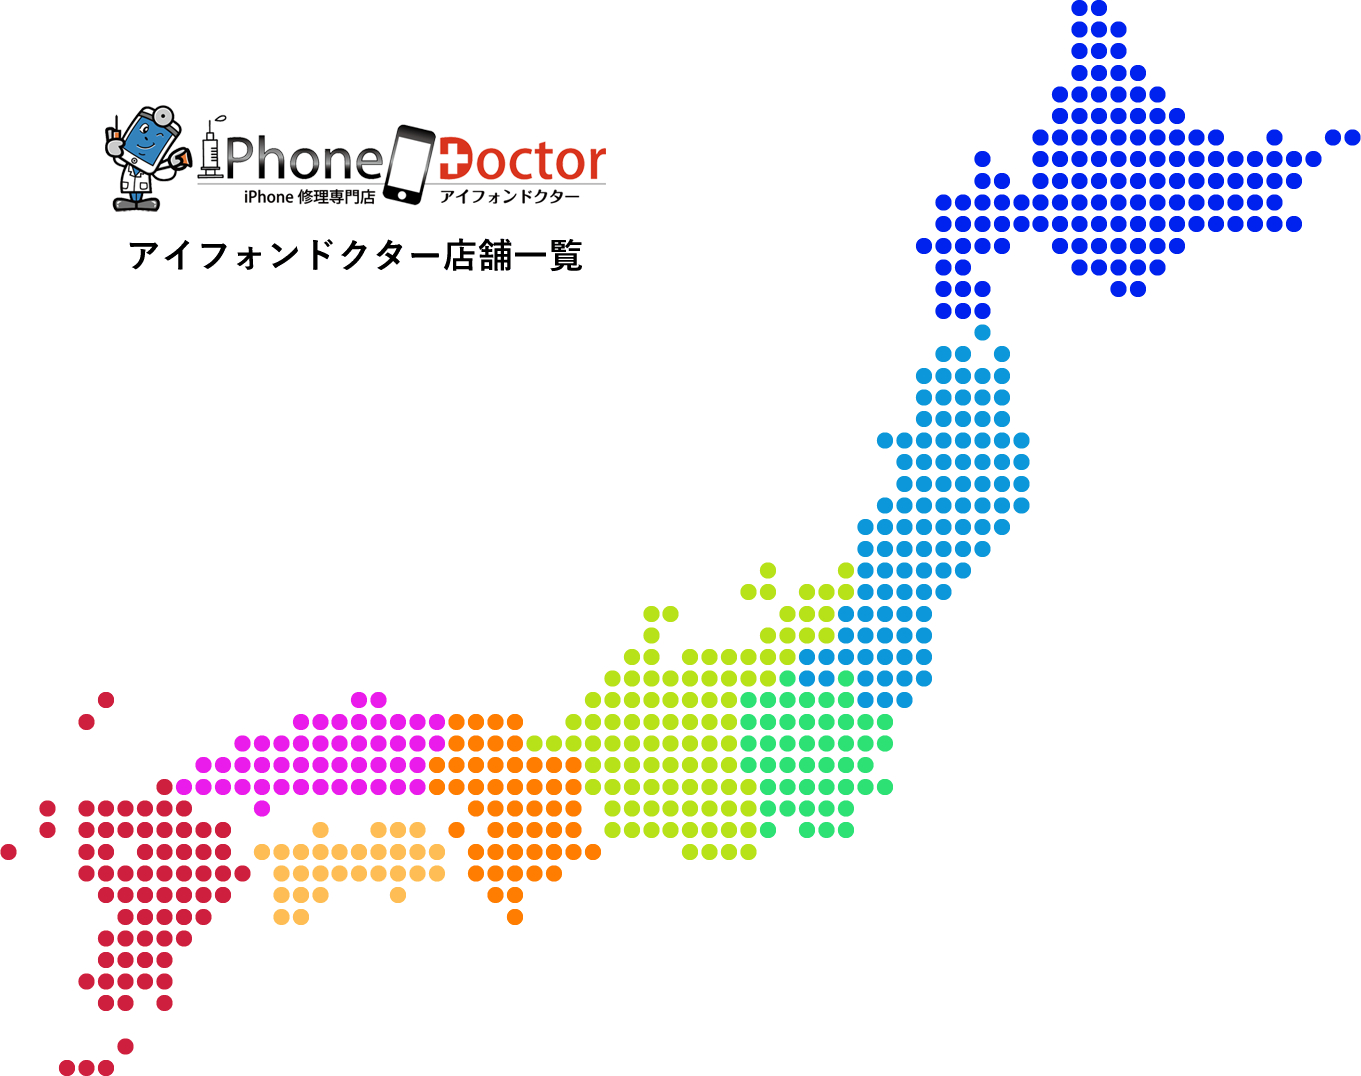 アイフォンドクター日本地図